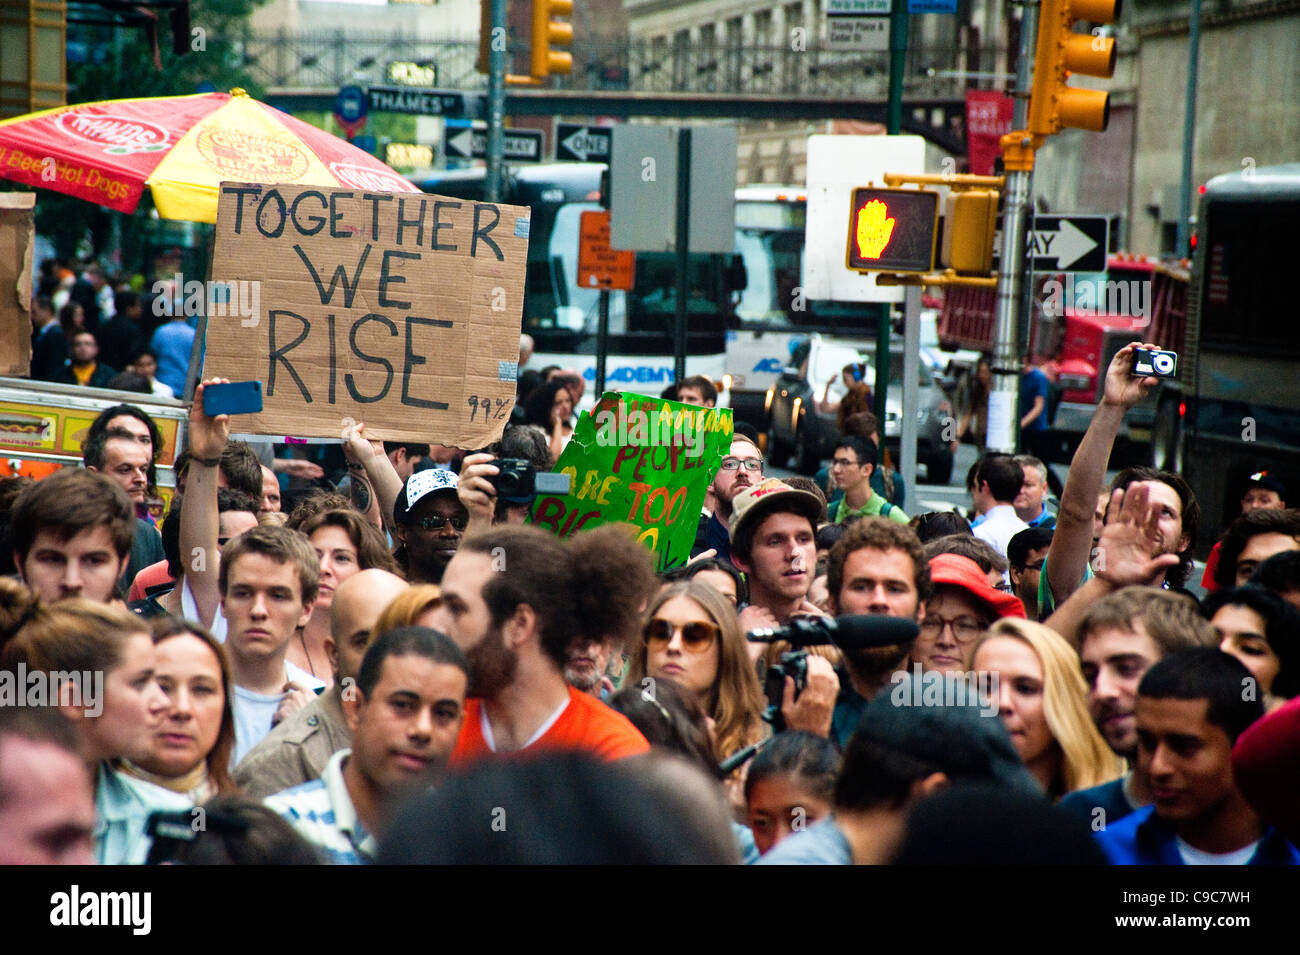 Occupy Wall Street, Zuccotti Park, New York, NY Stock Photo